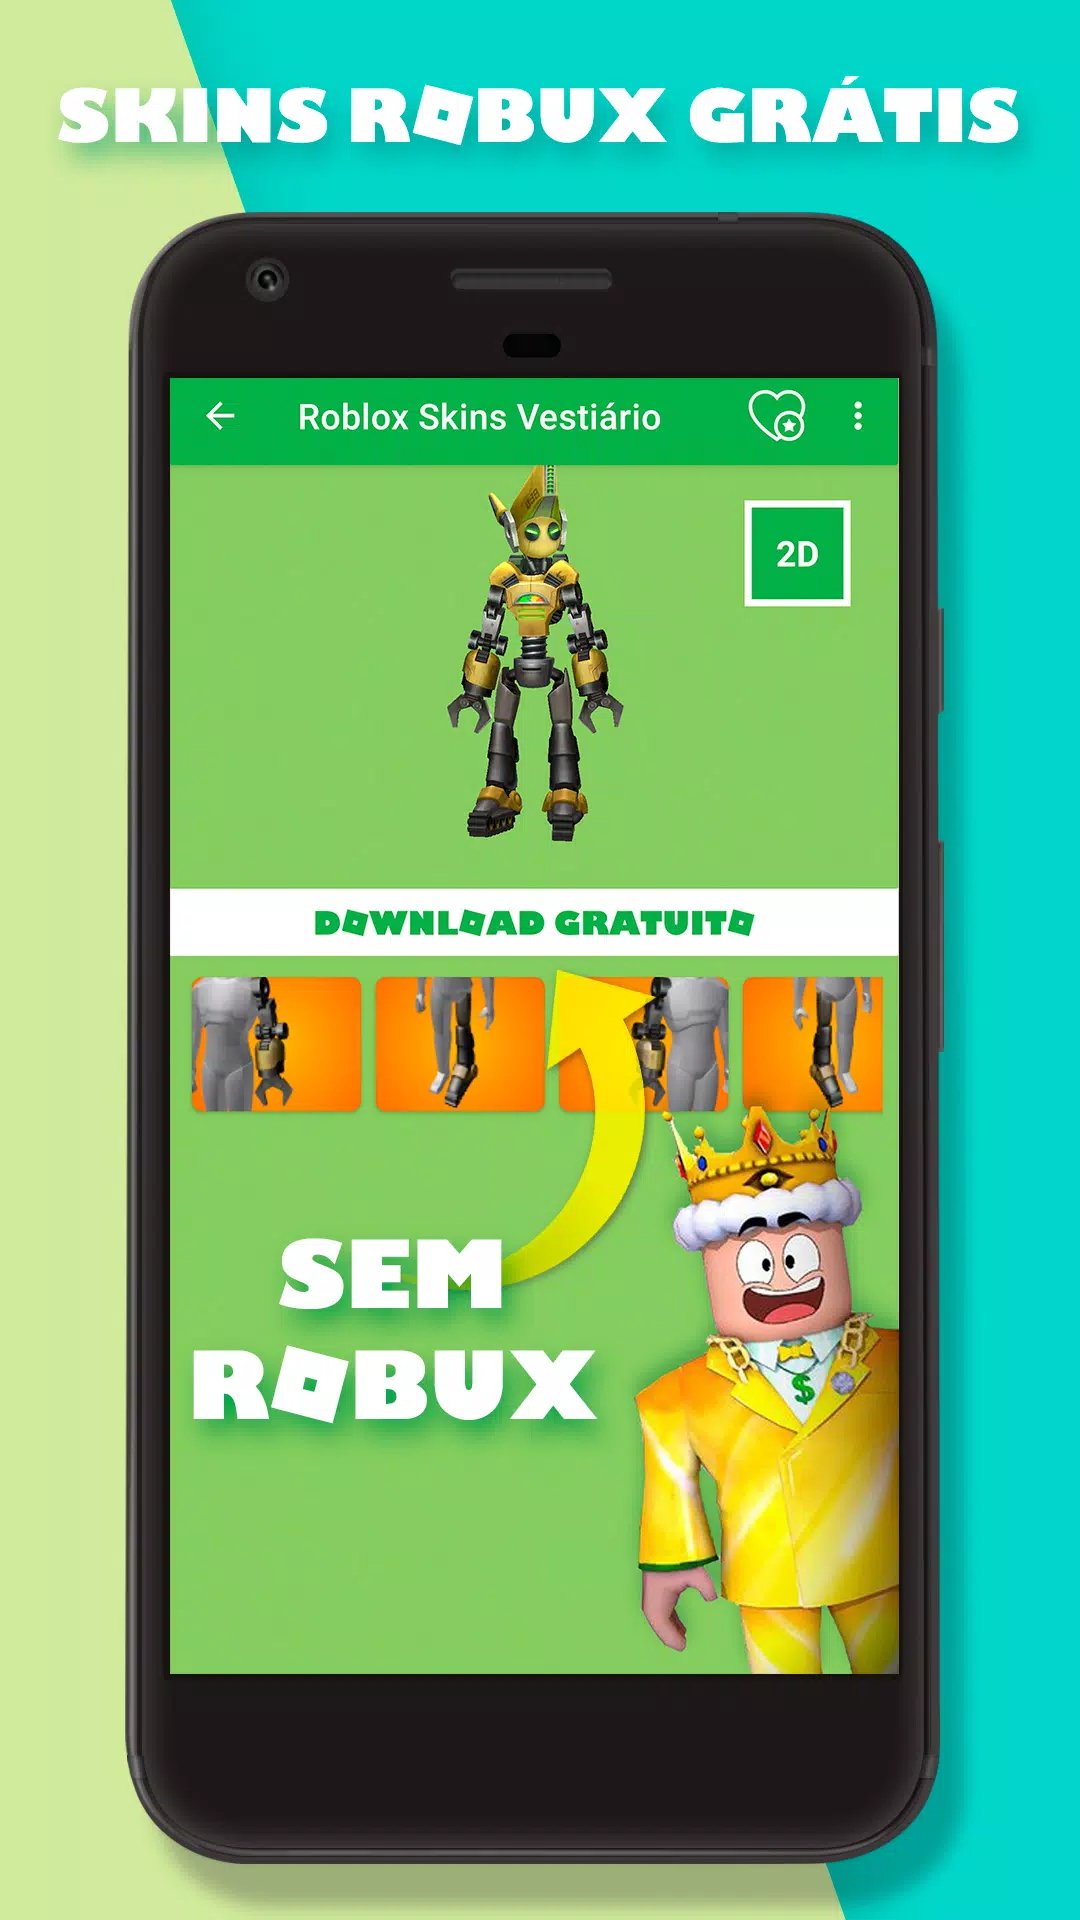 Meu Roblox Skins sem Robux Grátis – RobinSkin APK (Android App) - Baixar  Grátis